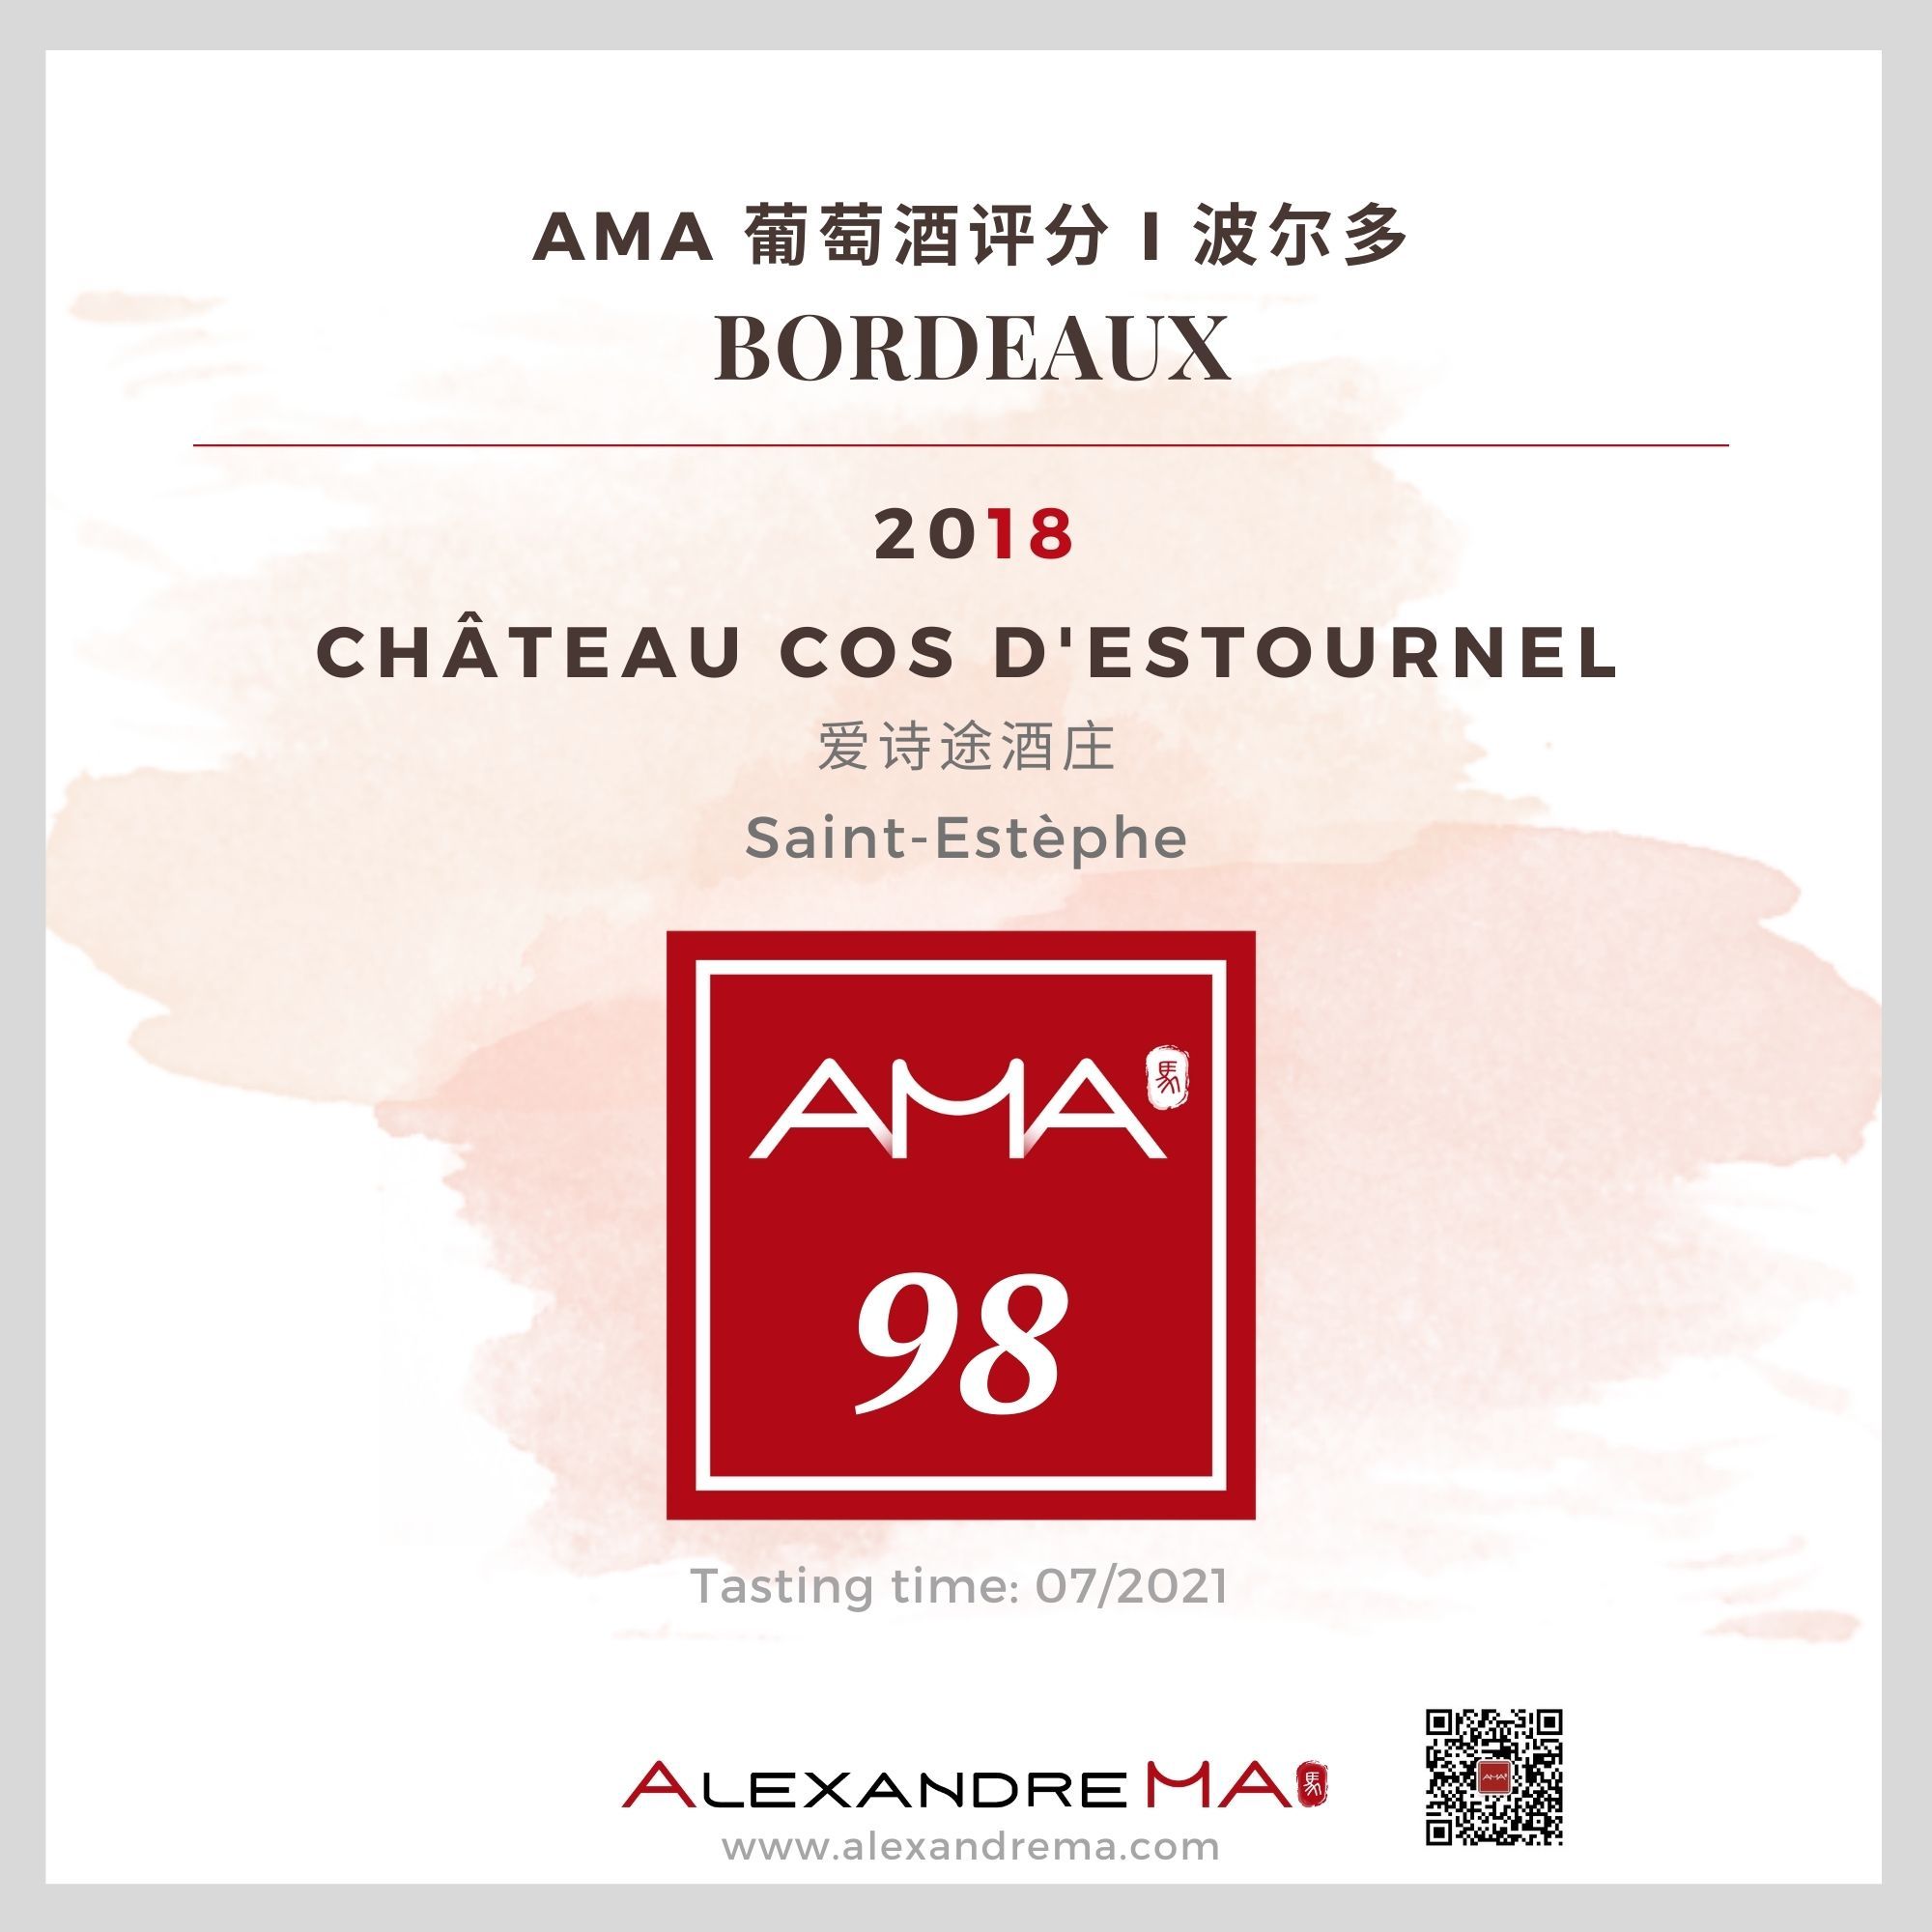 Château Cos d’Estournel 2018 爱诗途酒庄 - Alexandre Ma